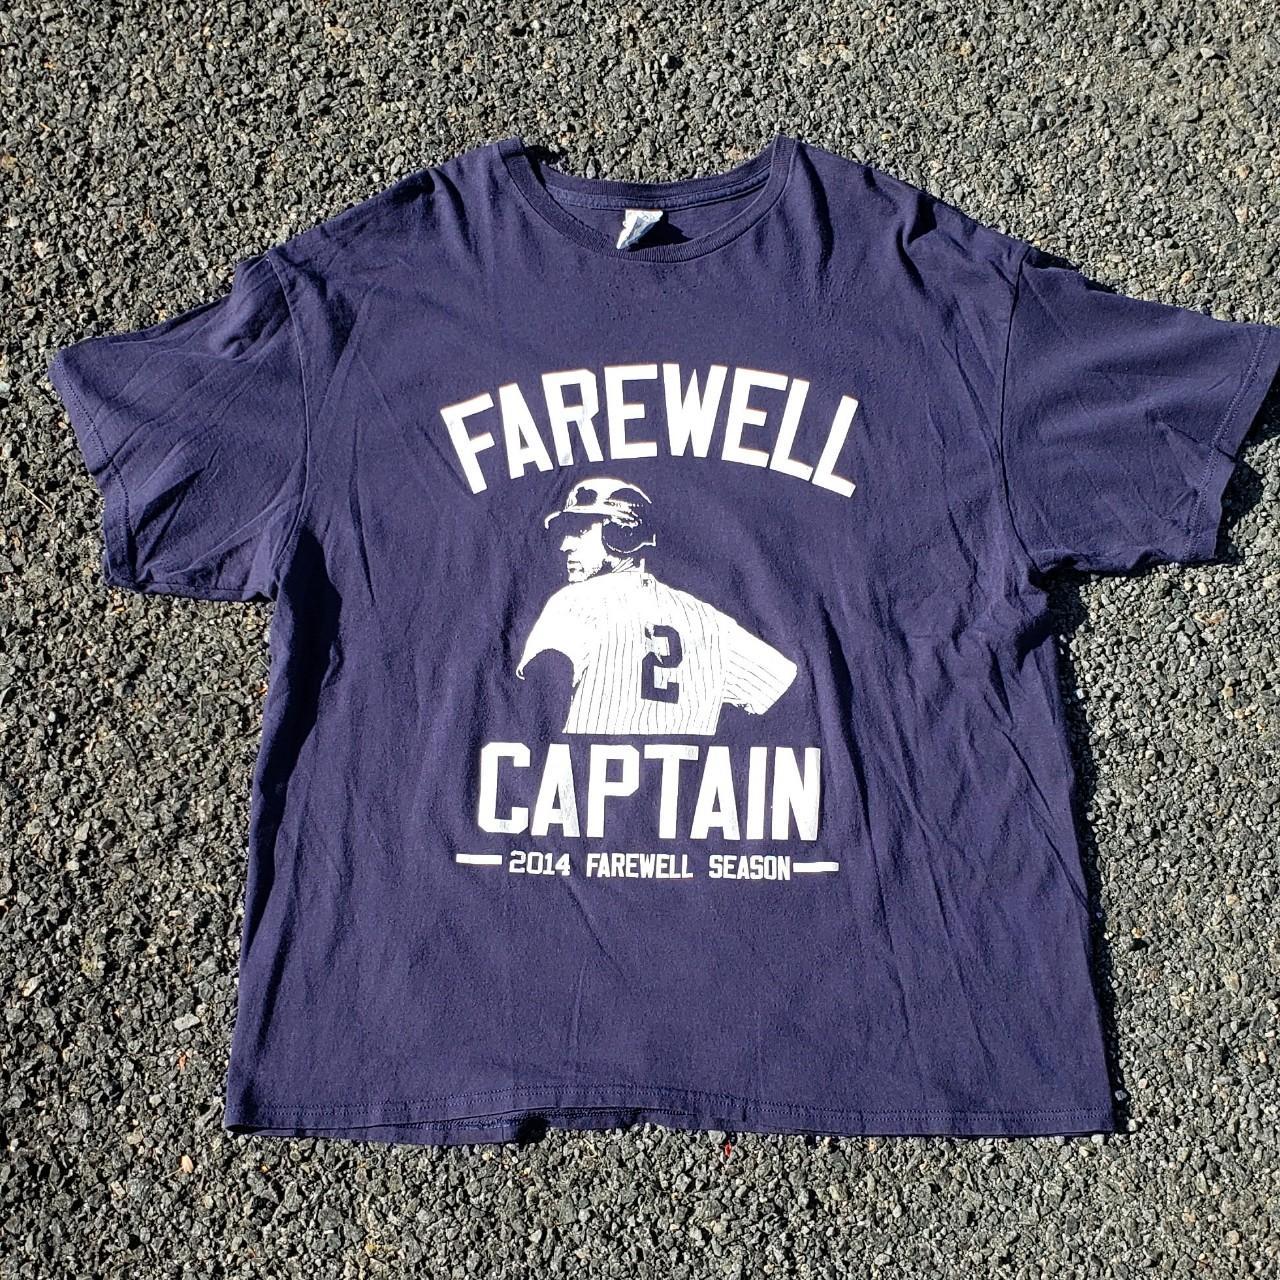 Derek Jeter - Farewell Captain | Active T-Shirt